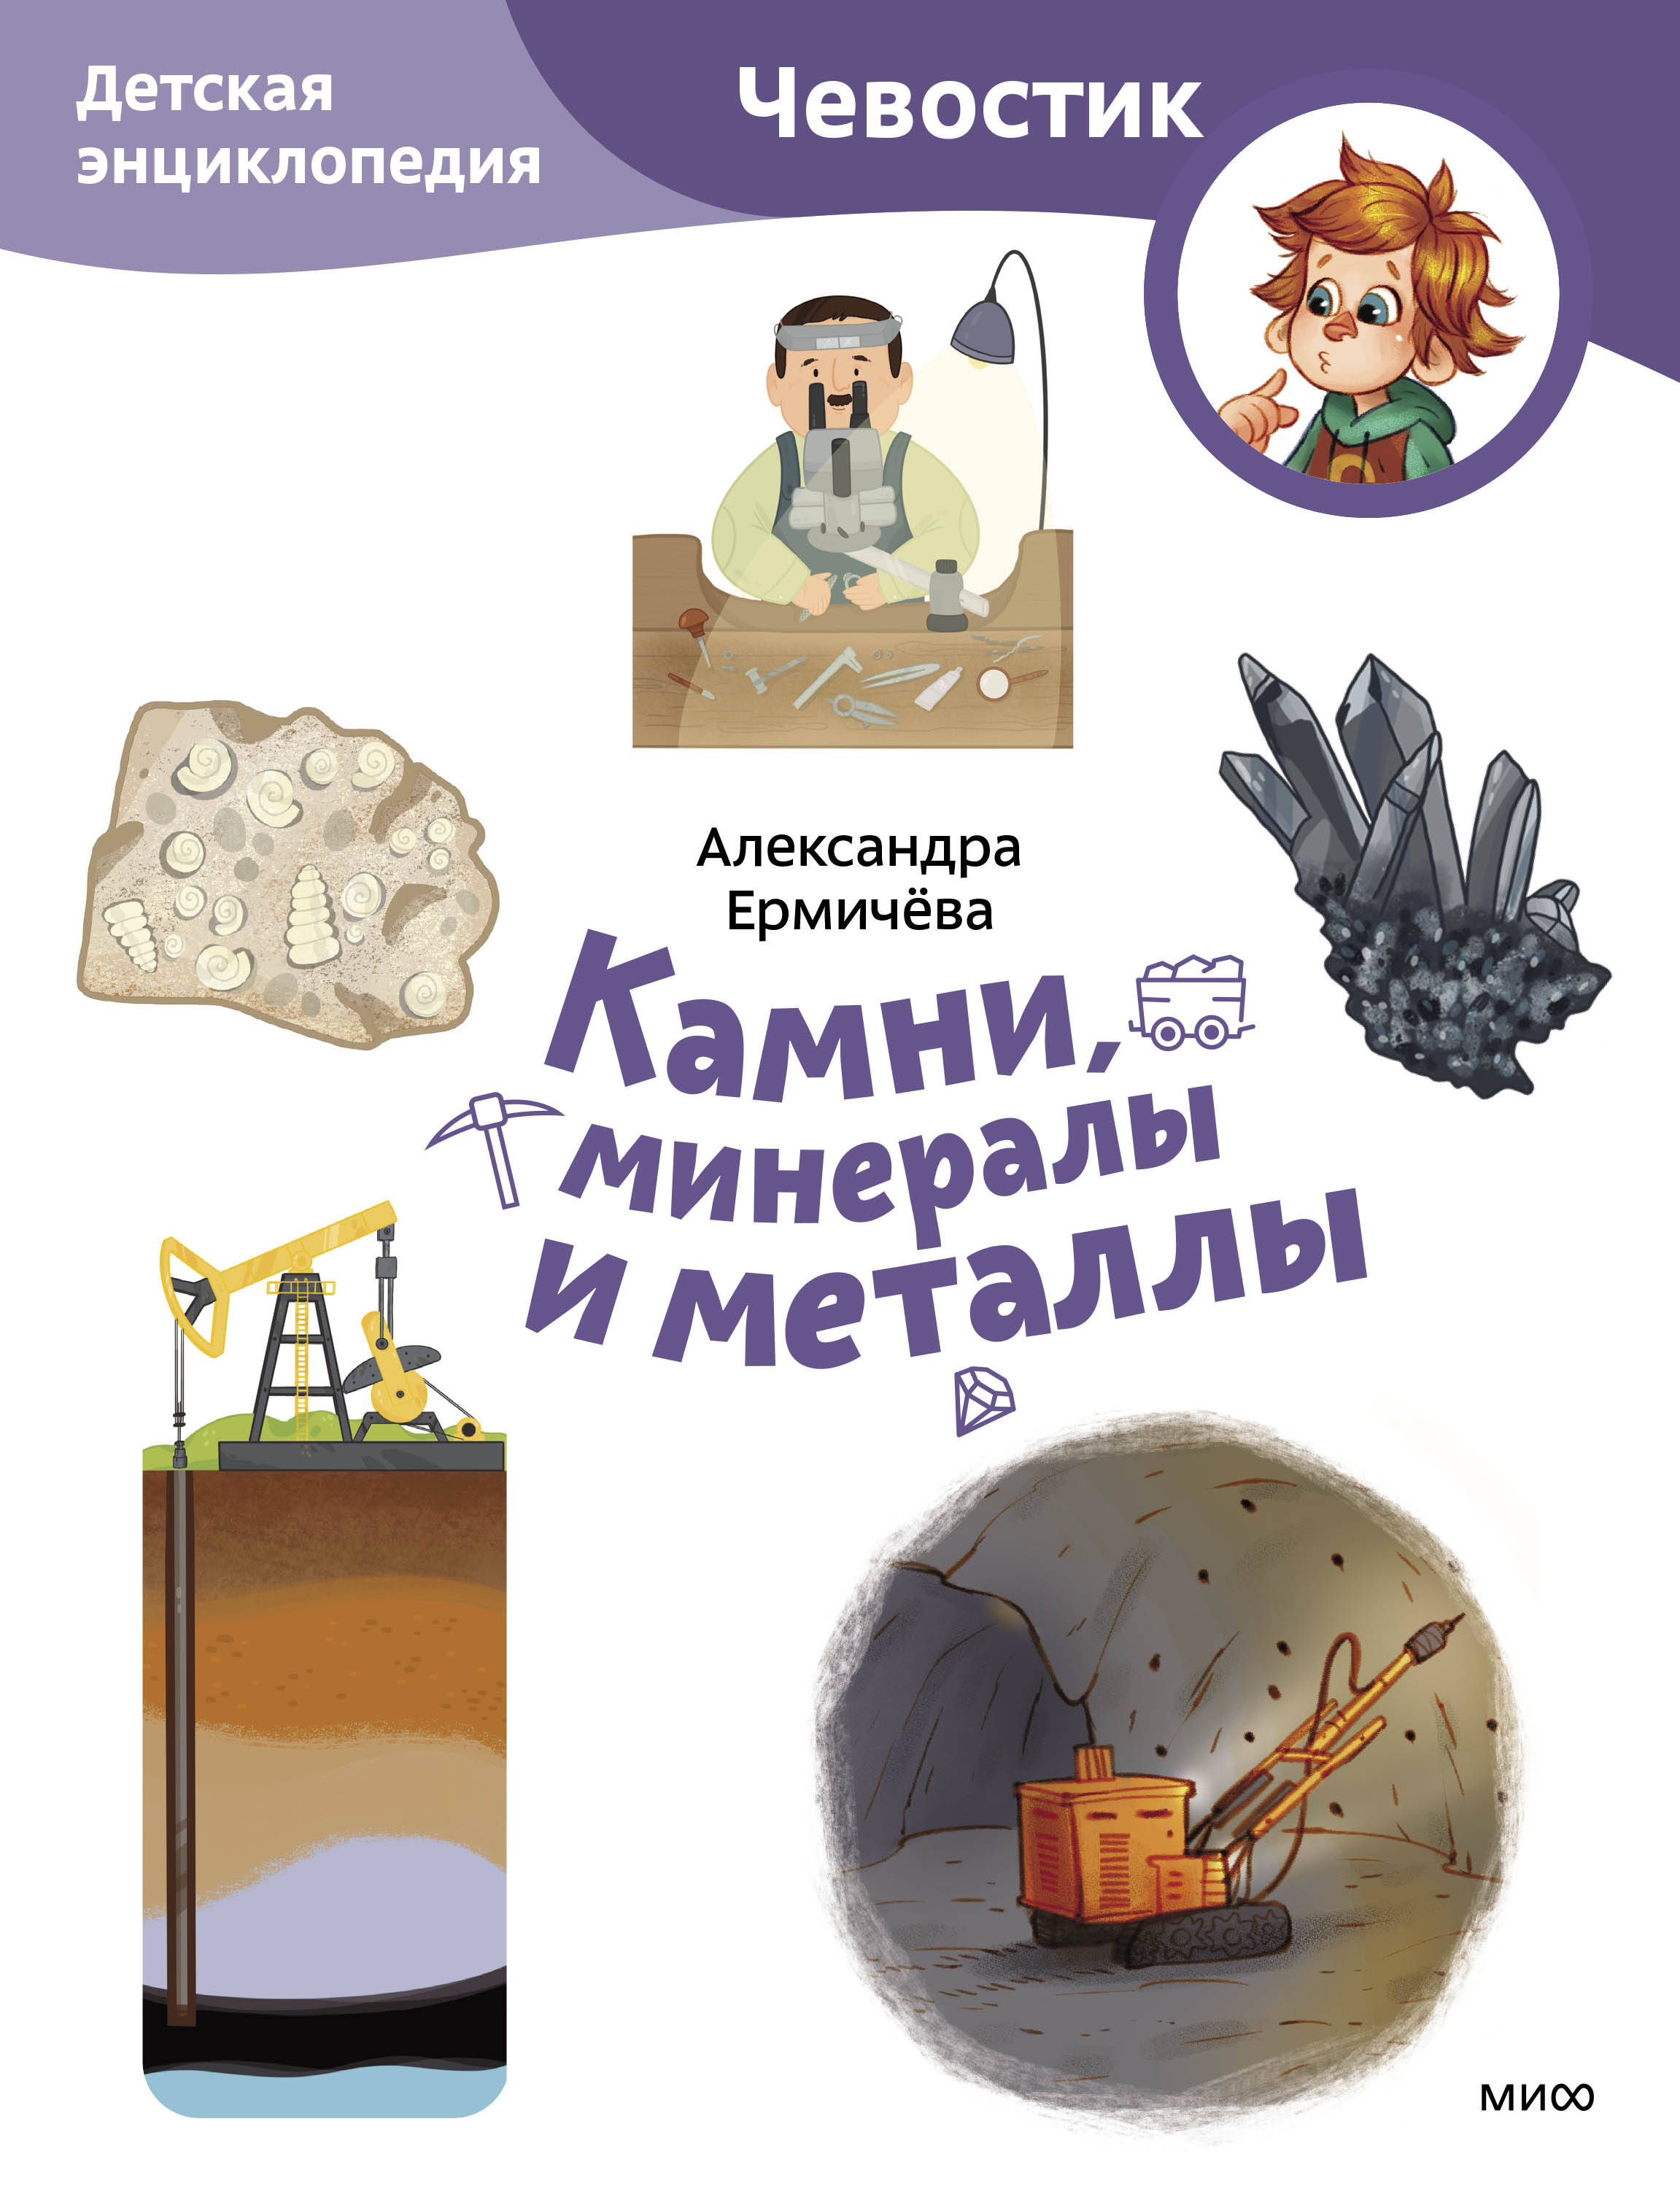 Ермичева Александра Камни, минералы и металлы. Детская энциклопедия